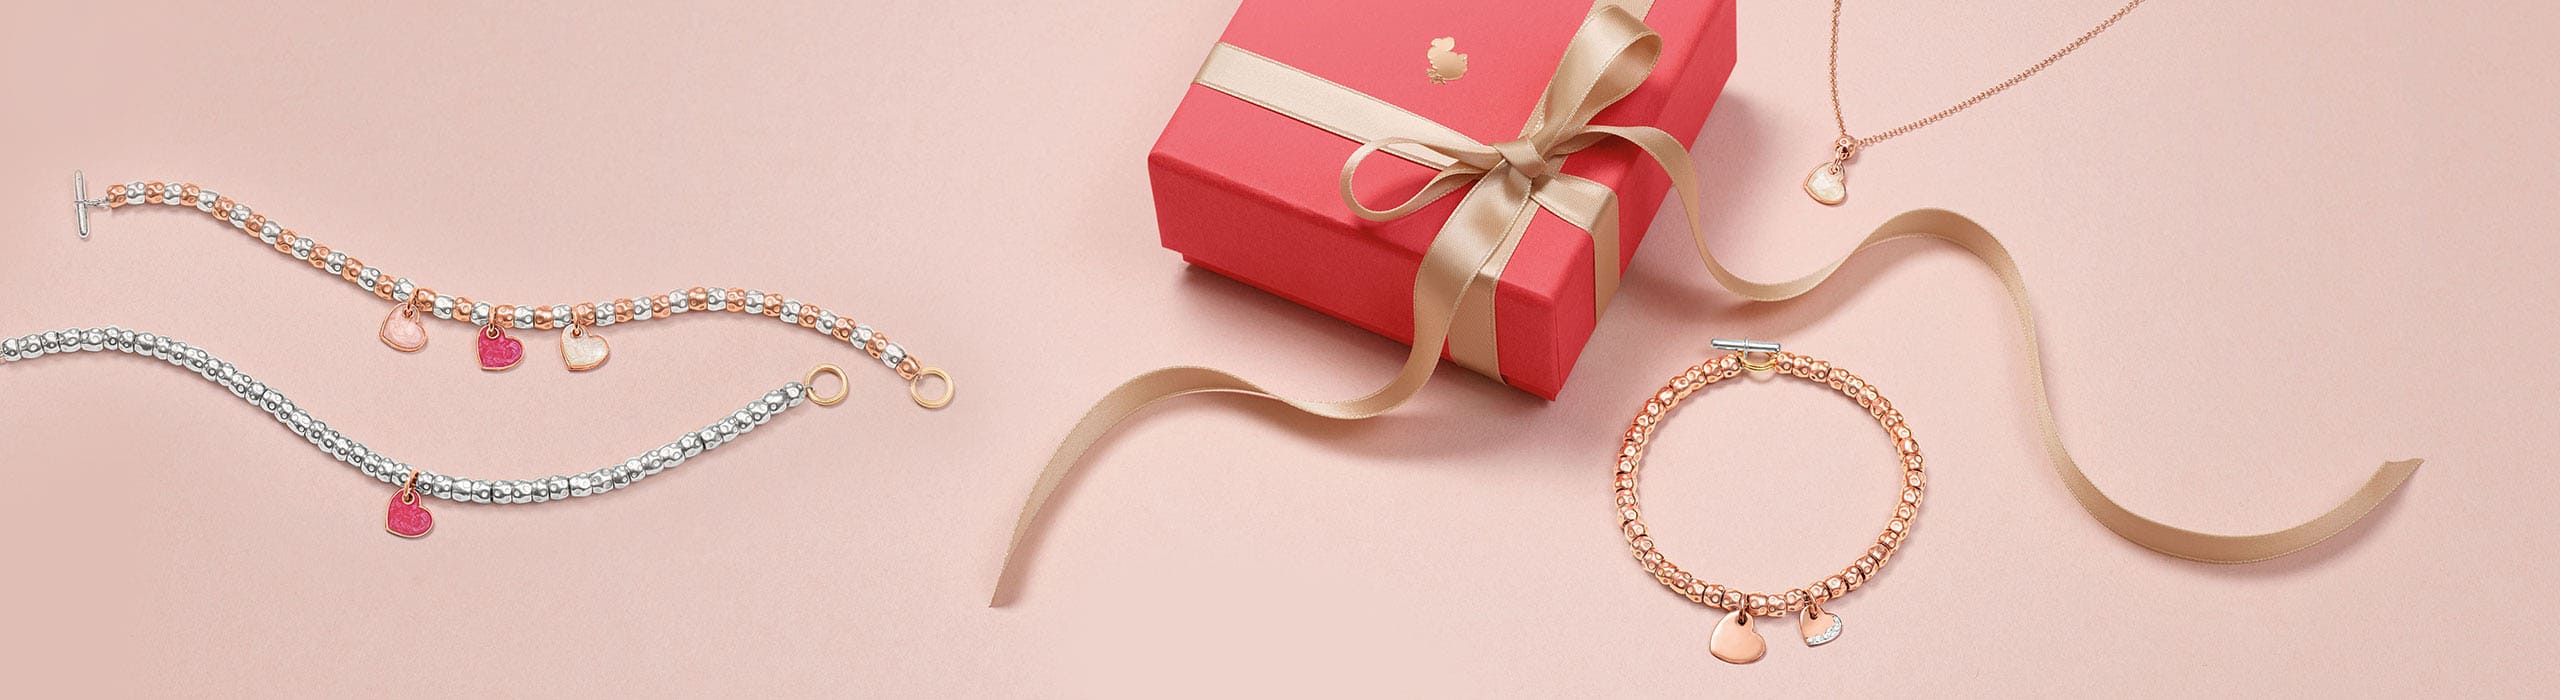 Schmuck von Dodo auf rosa Hintergrund und mit einem Geschenkpaket